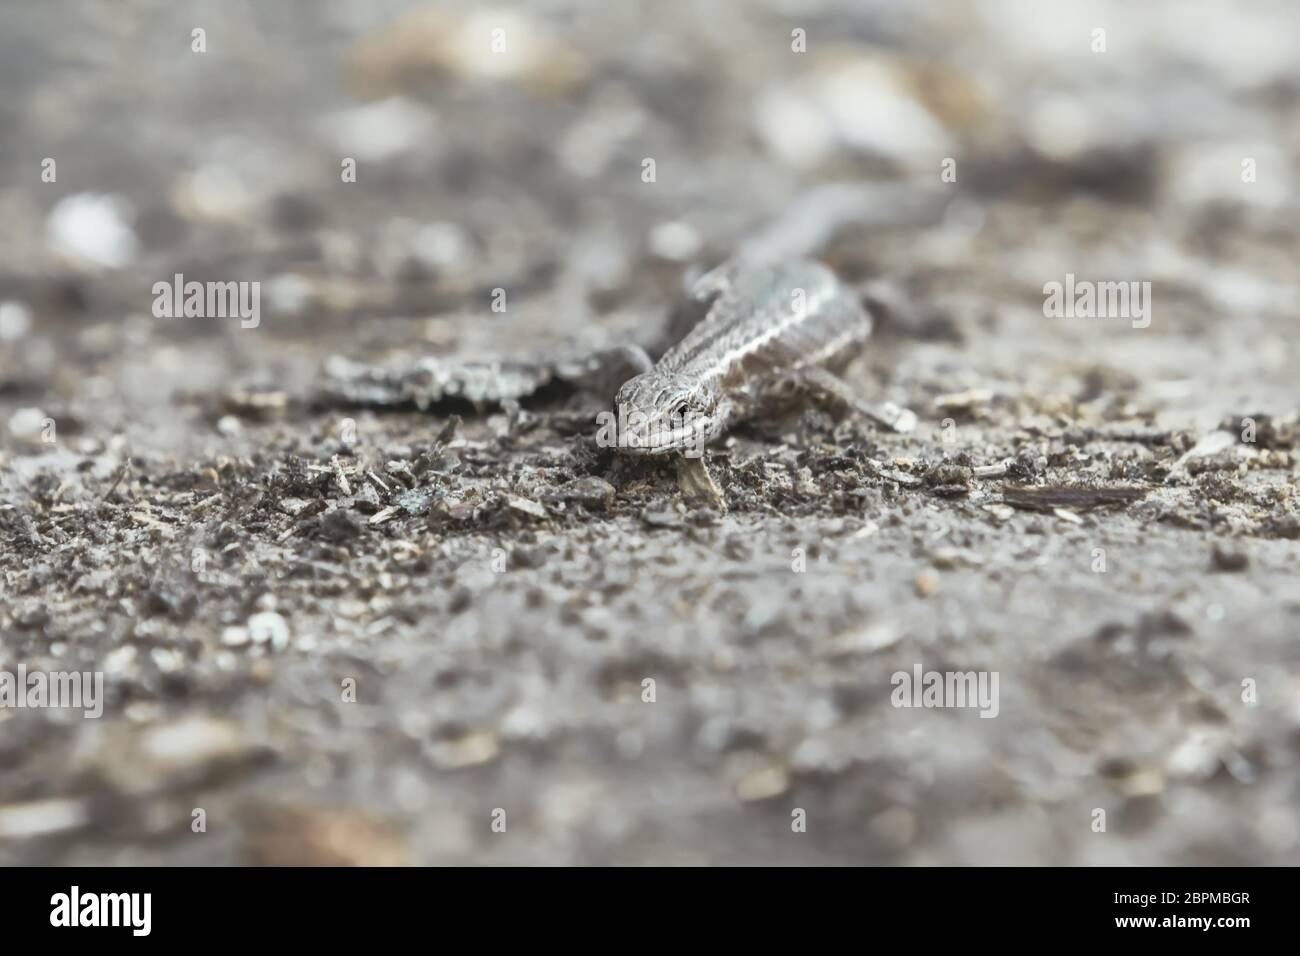 Kleine braune Viviparous Eidechse - Zootoca vivipara Nahaufnahme - kriechen auf dem Boden und Blick auf die Kamera. Natürlicher unscharfer Hintergrund mit flachem d Stockfoto